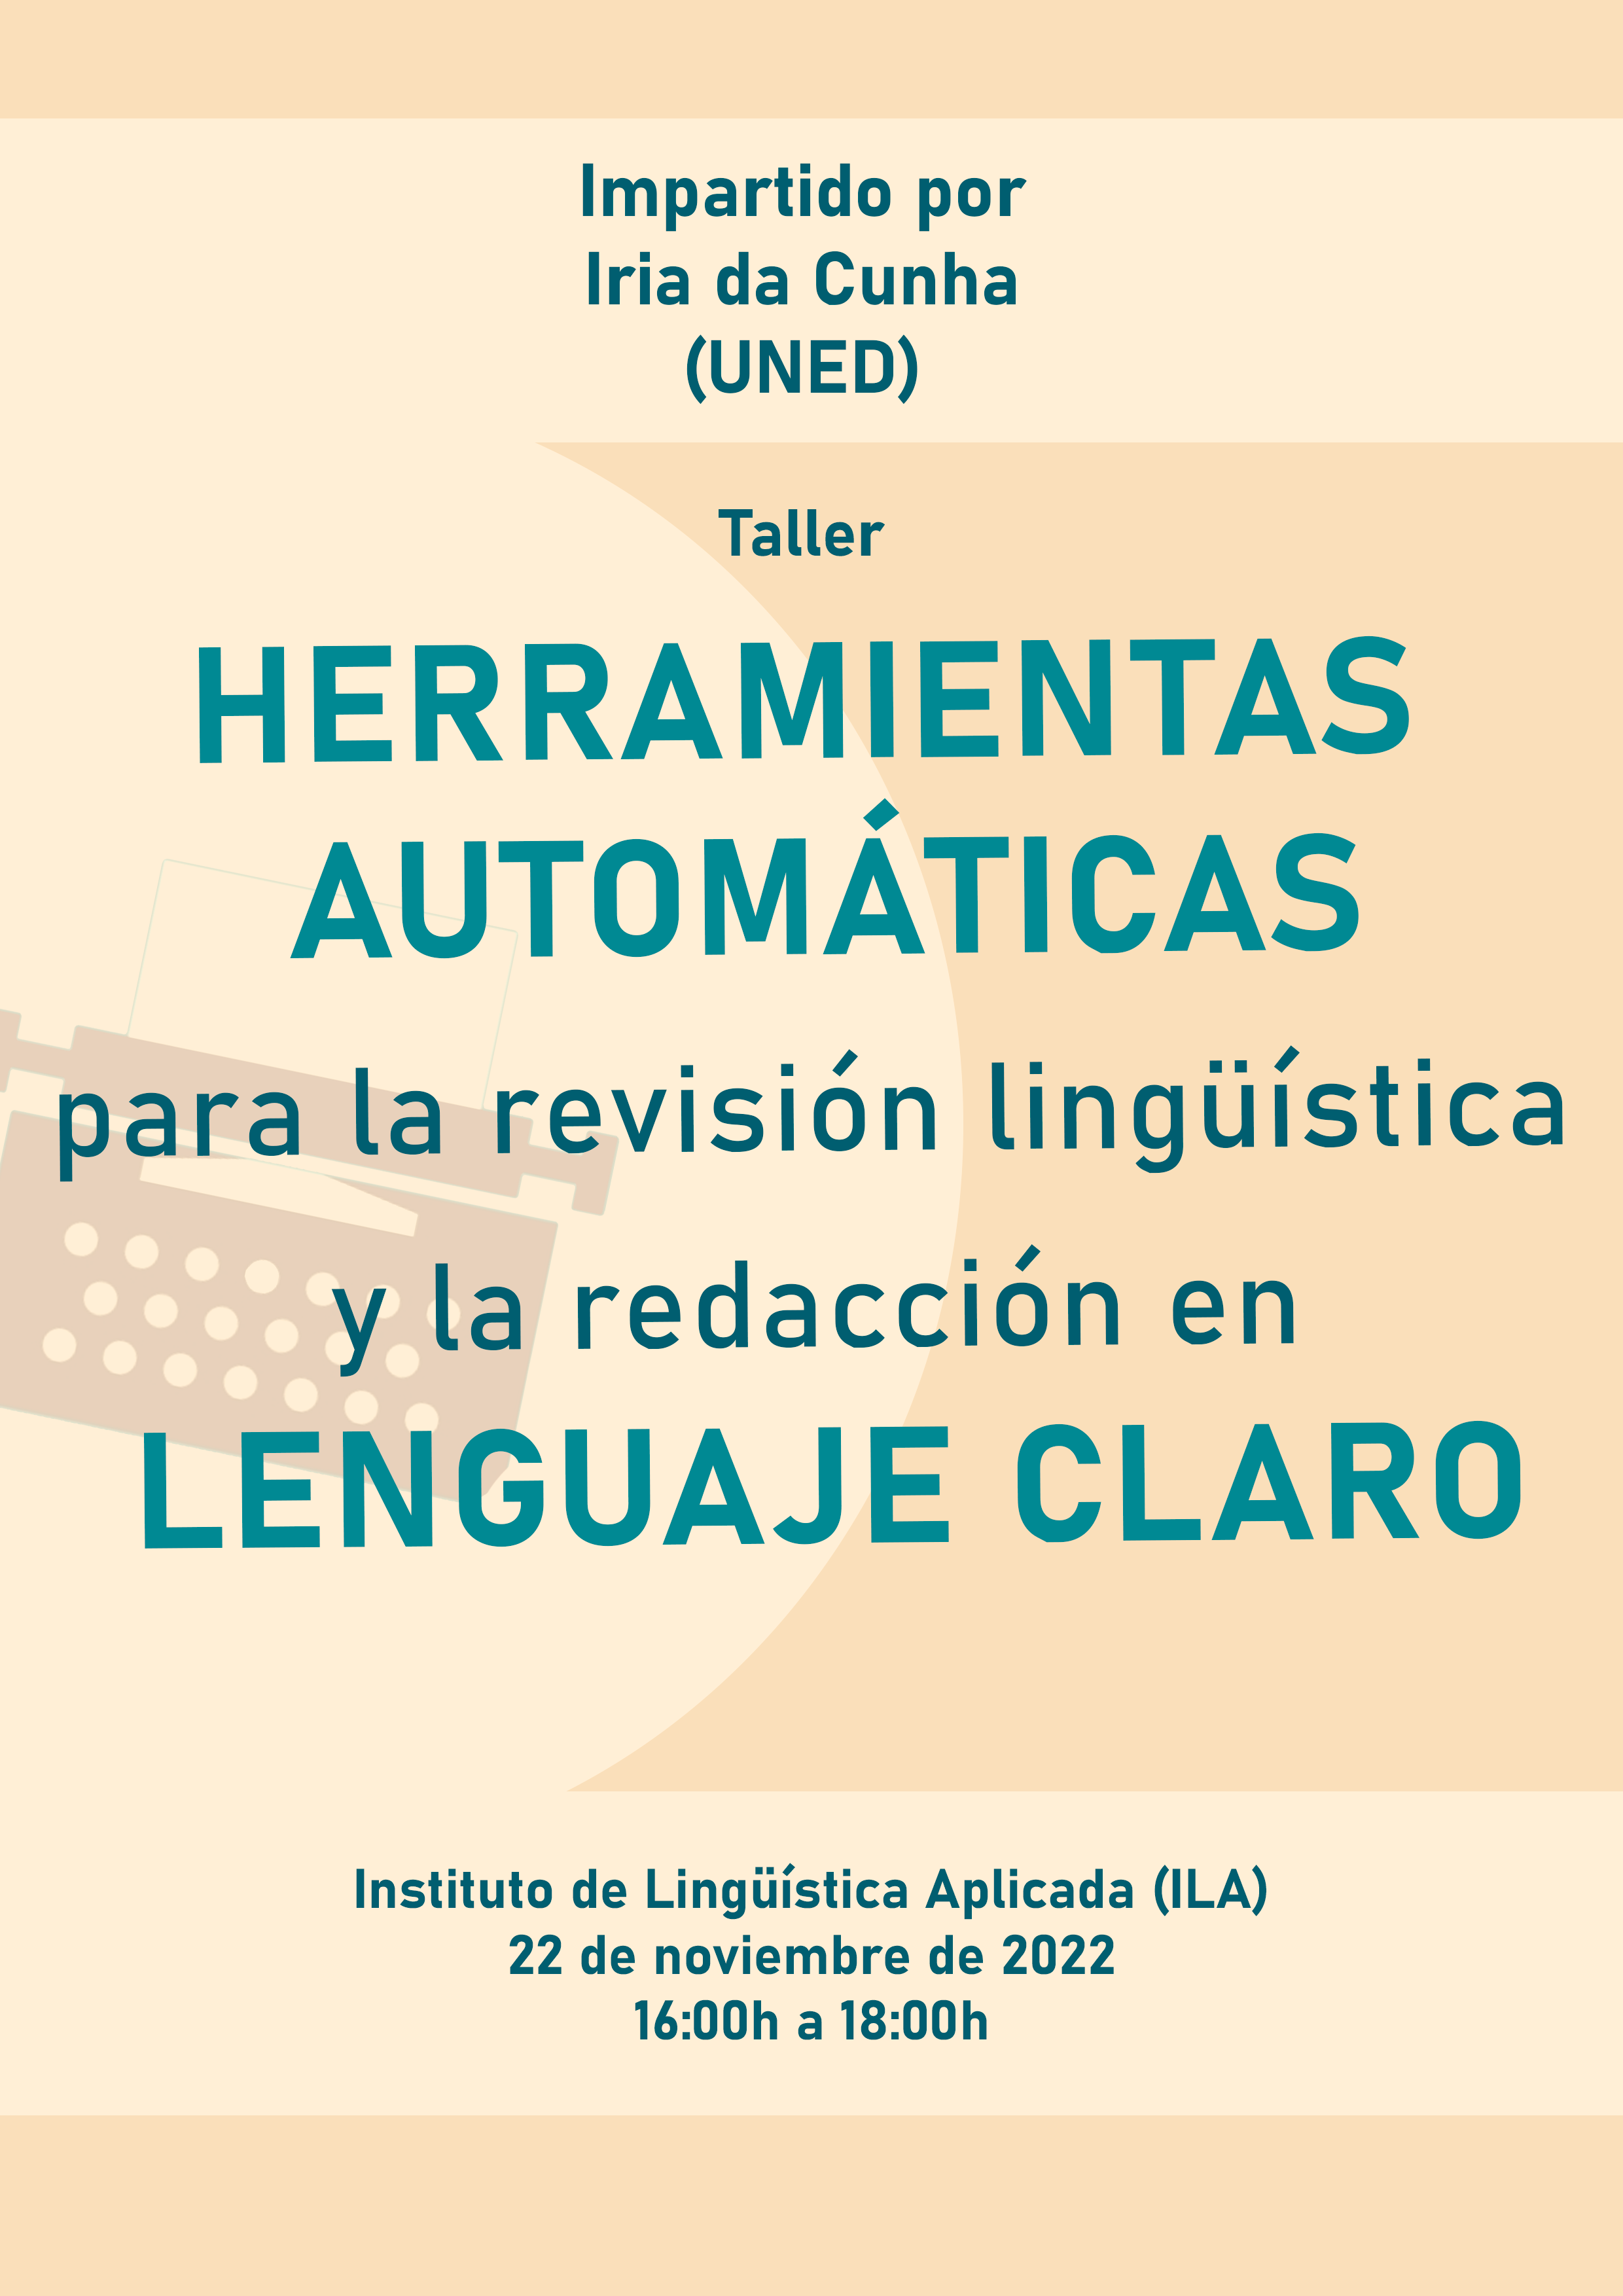 Taller “Herramientas automáticas para la revisión lingüística y la redacción en lenguaje claro”